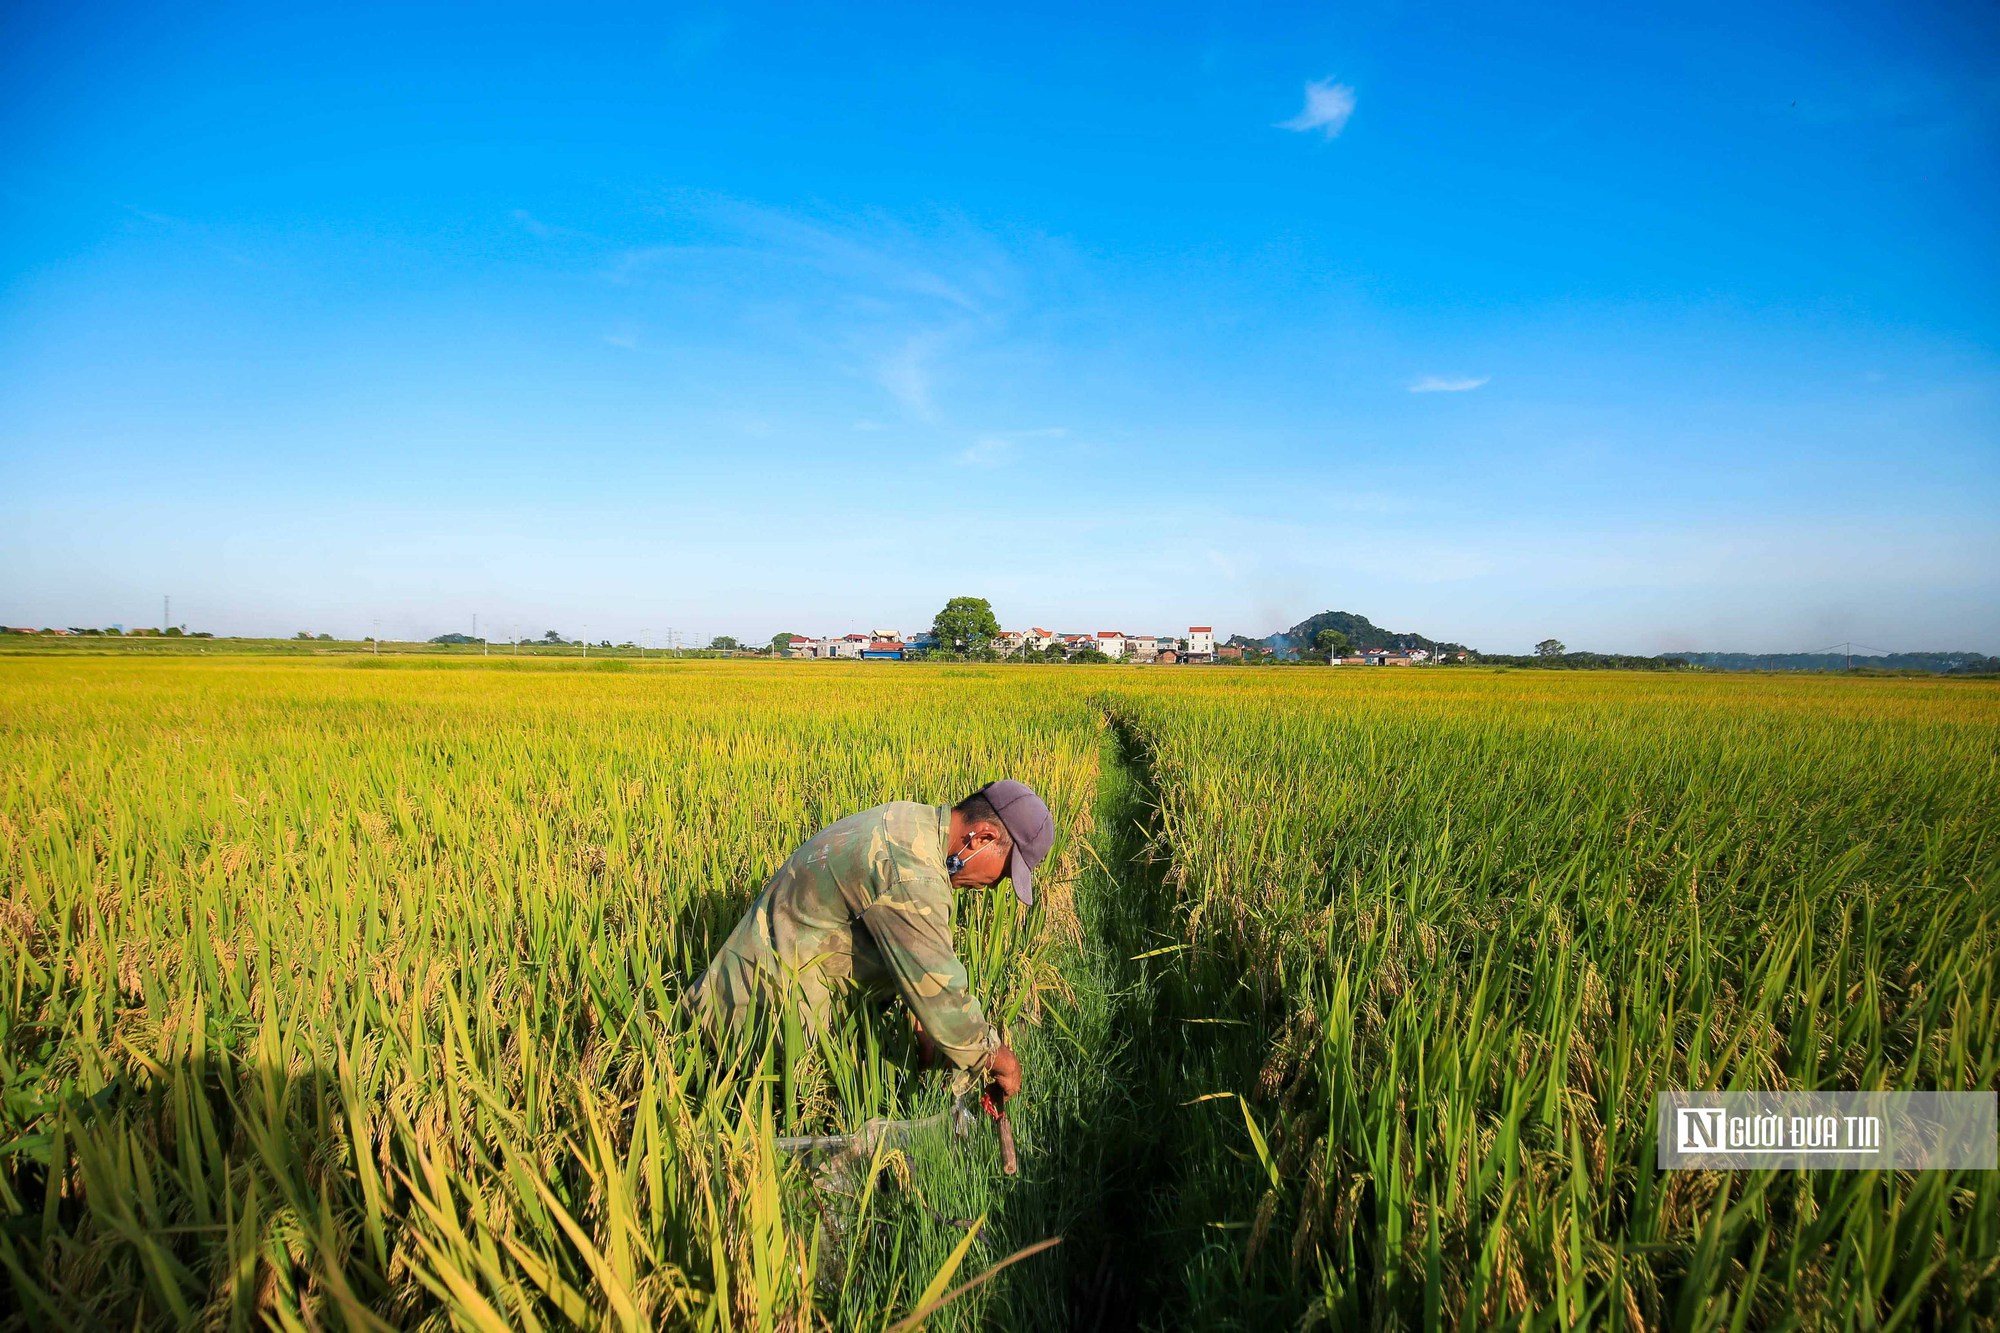 Ấn Độ cấm xuất khẩu gạo: Cơ hội cũng là rủi ro nếu doanh nghiệp găm hàng đẩy giá - Ảnh 3.